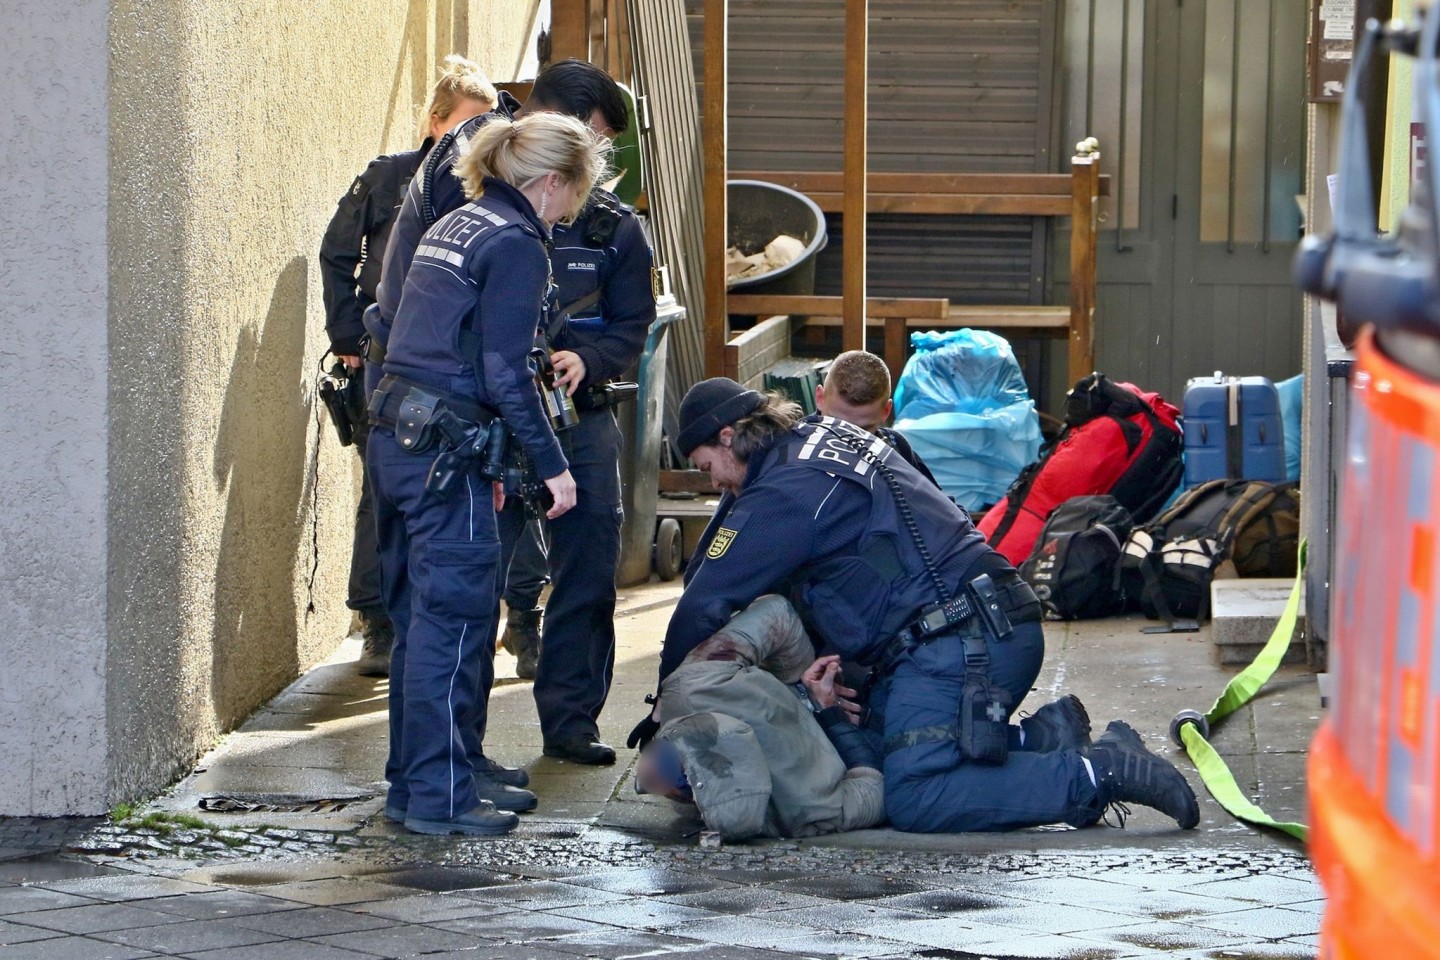 Festnahme eines bewaffneten Mannes nach dem Wohnungsbrand in Stuttgart am Dienstag.